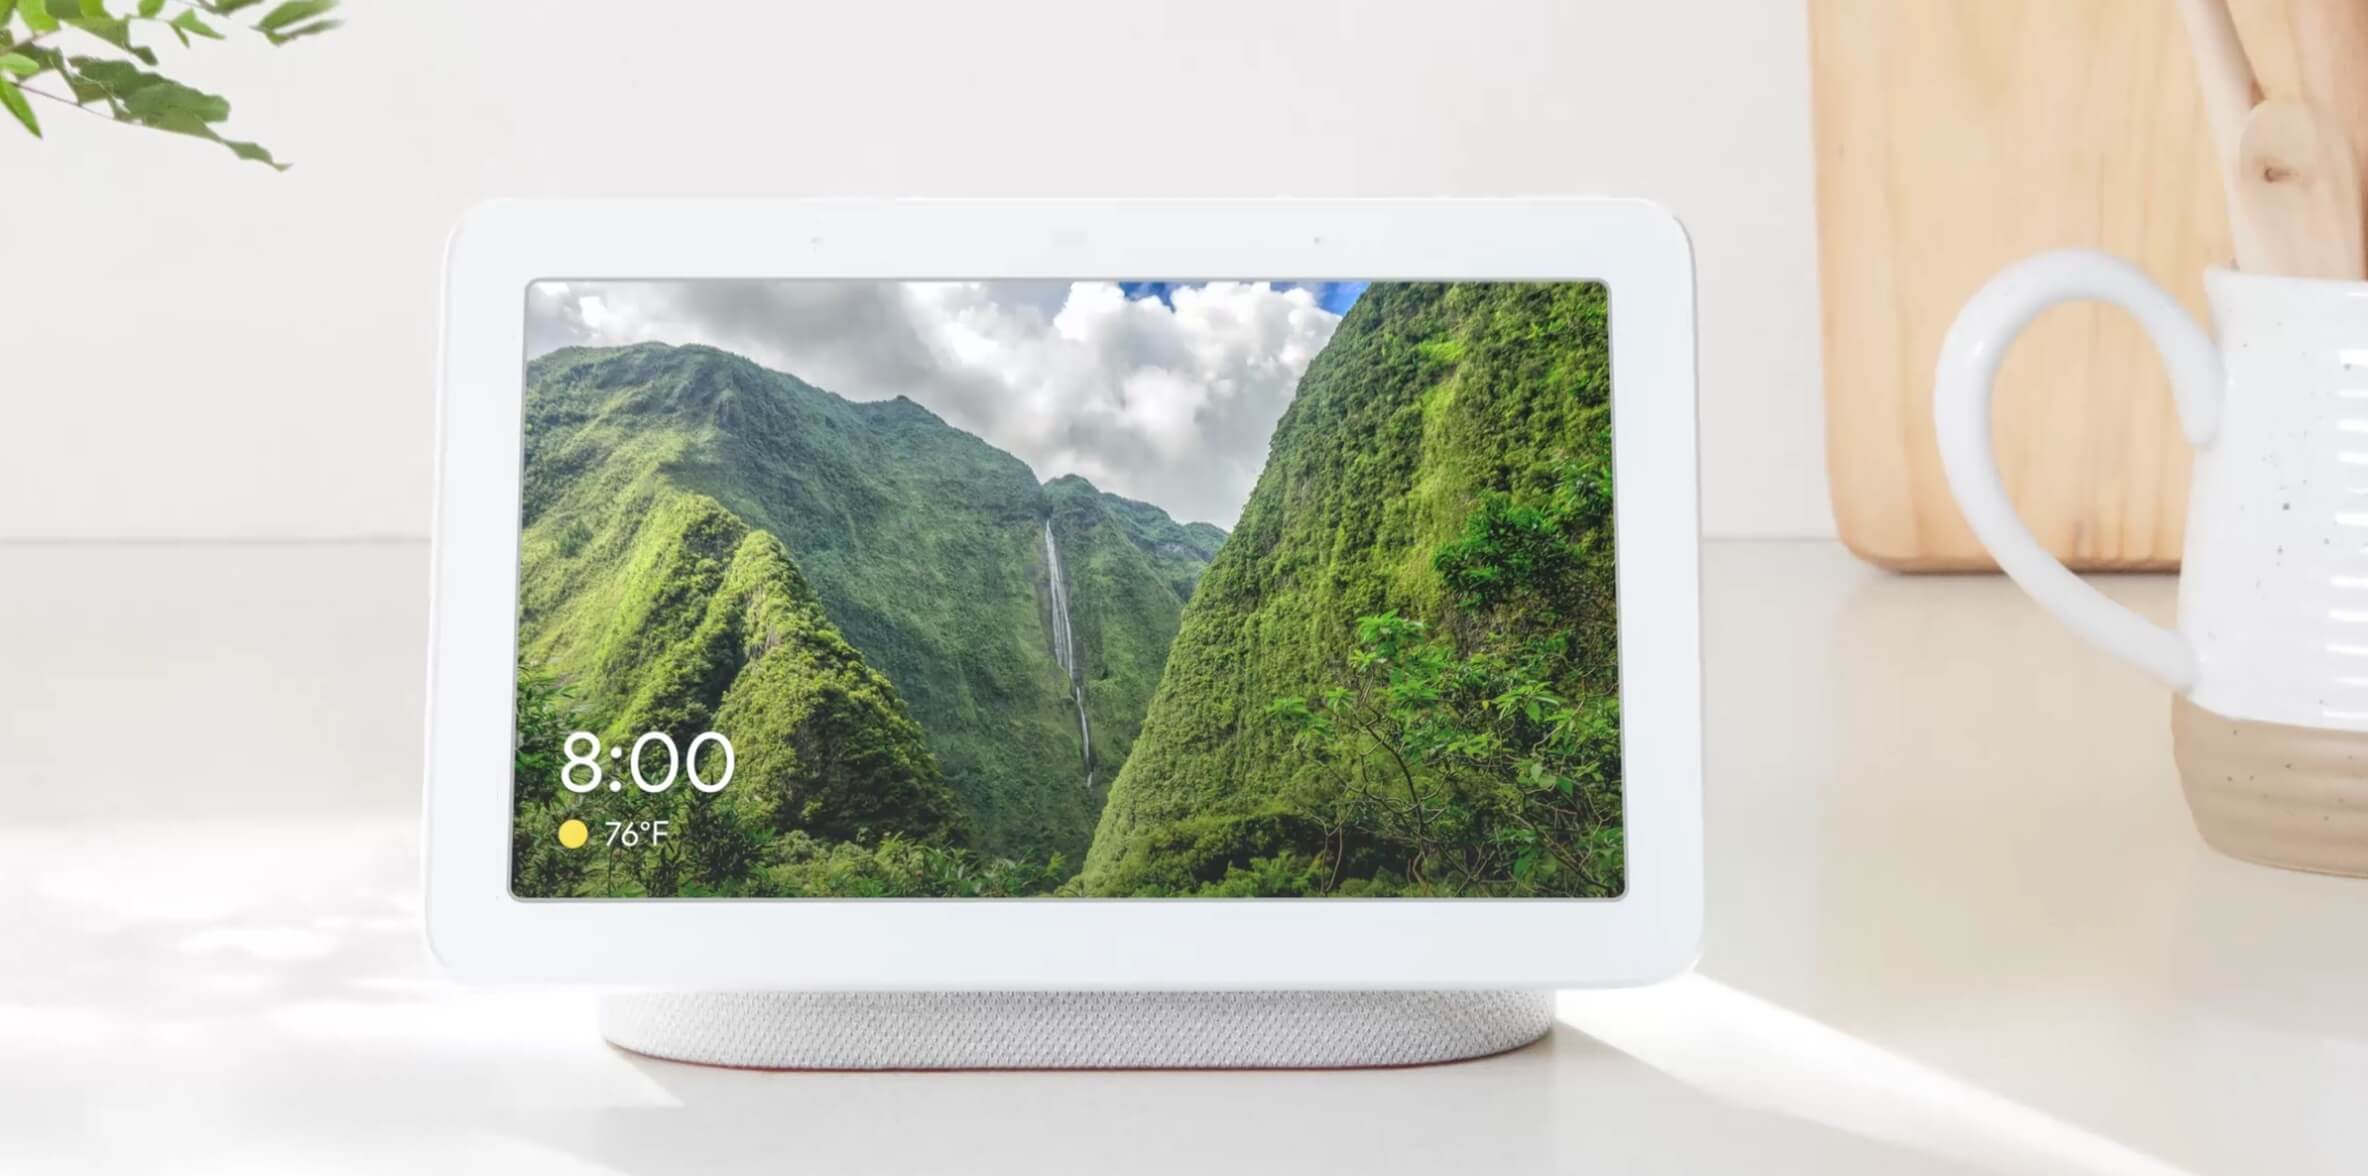 Google prepara Google Home con pantalla